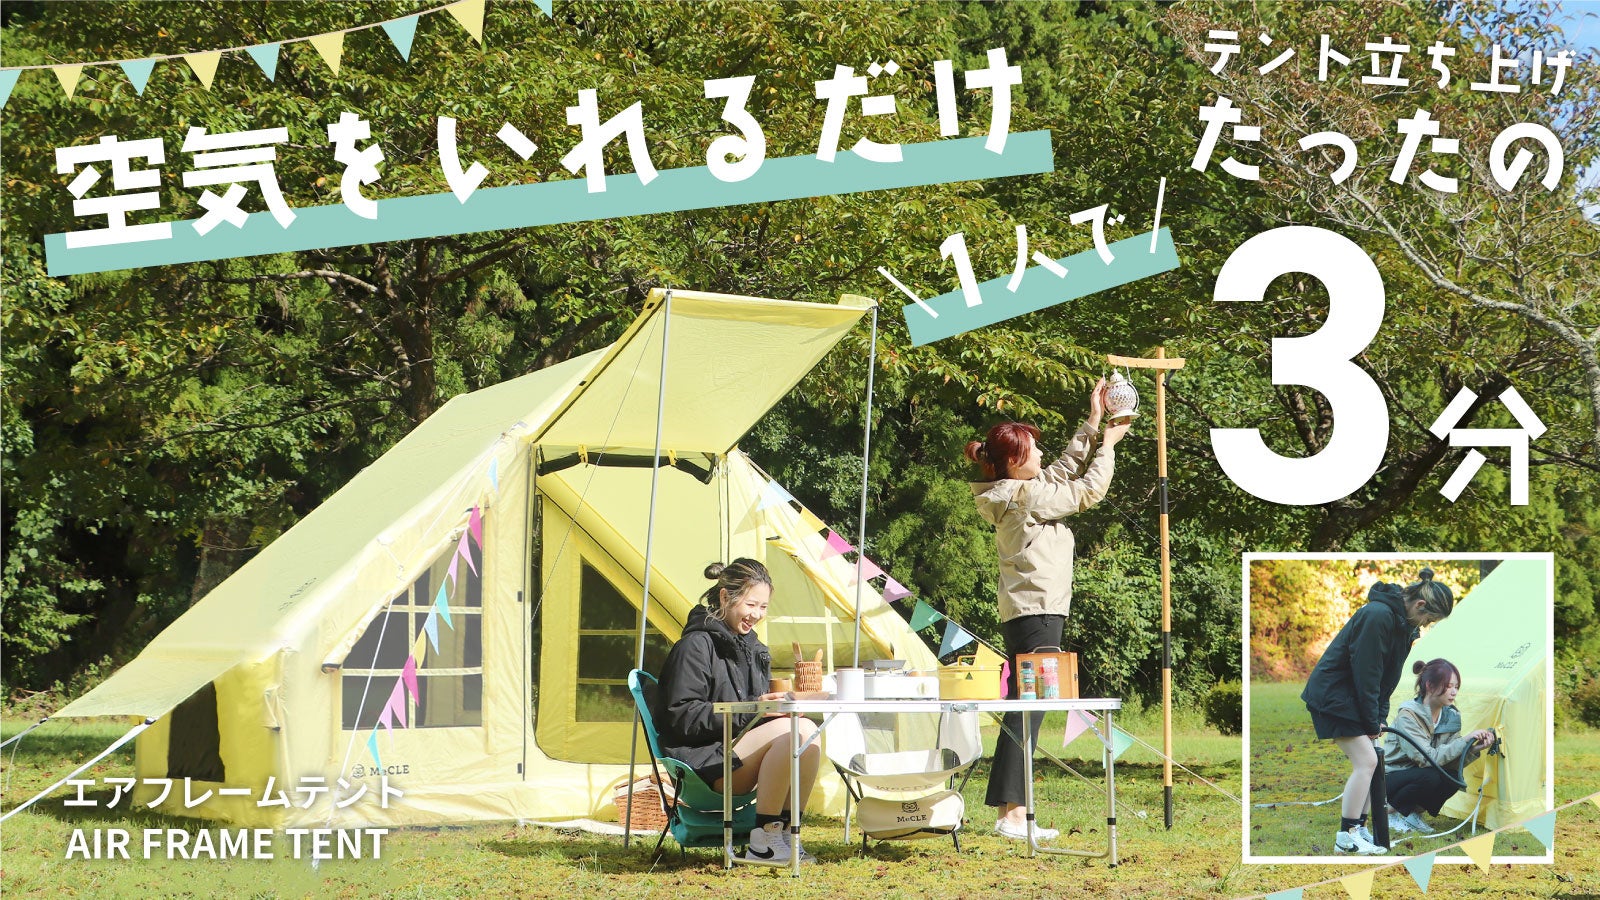 初心者でも簡単にキャンプを楽しめる「福岡キャンプレンタル」が、空気を入れるだけのテントのレンタル開始のサブ画像2